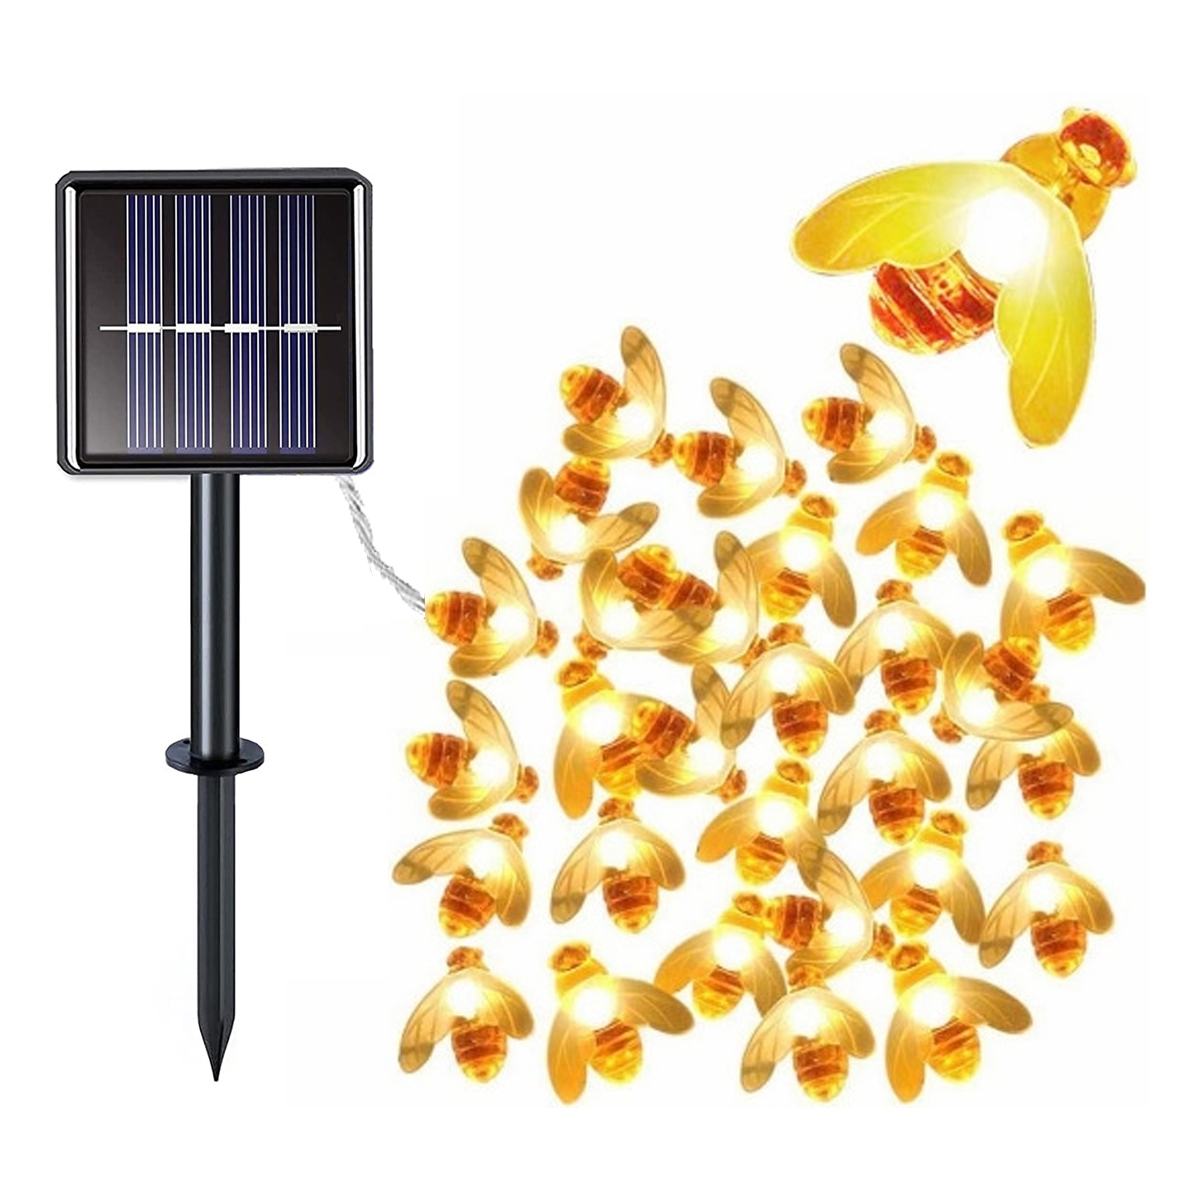 Biene Lichter Solar-Lichterkette, Biene, Kleine 50 Solar-Lichterkette Lichterkette, 7m DEDOM Bienenleuchten, Warmweiß Solar-Lichterketten,